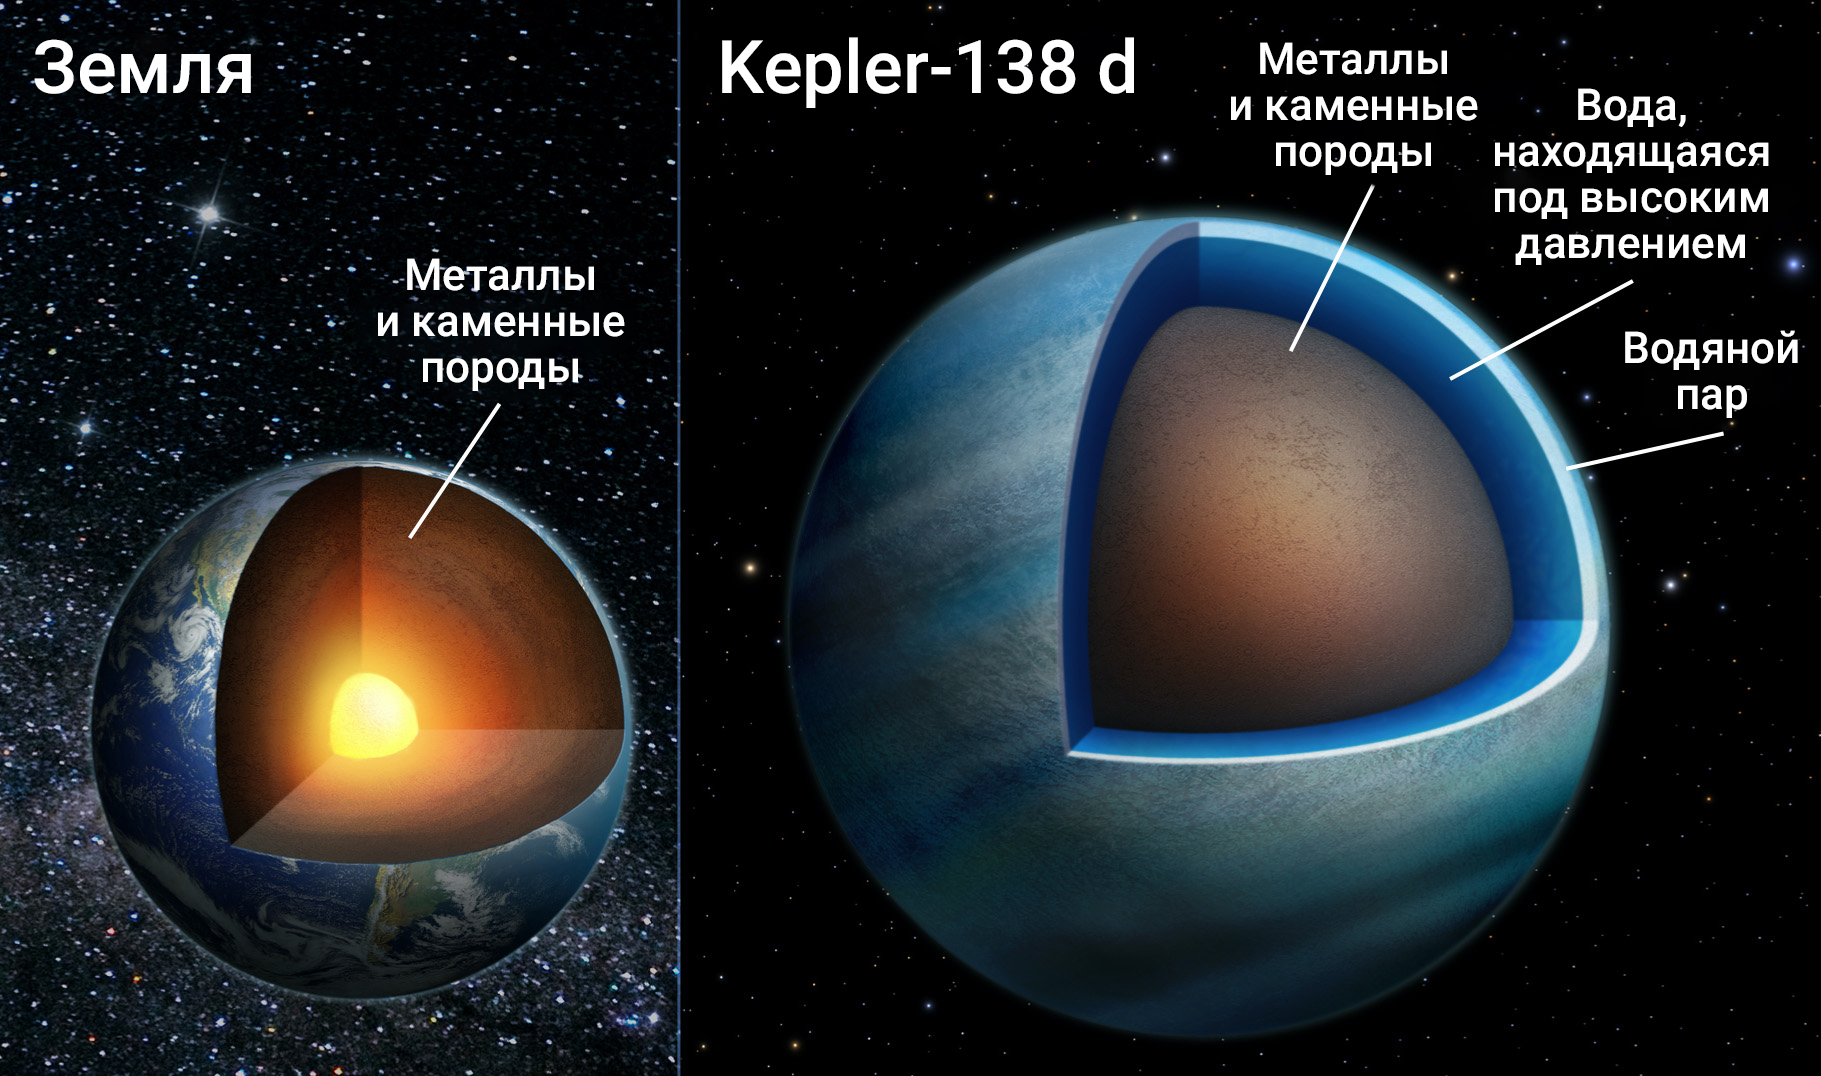 Сравнение размеров и состава Земли и одной из планет системы Kepler-138. Фото © NASA / University of Montreal / Benoit Gougeon